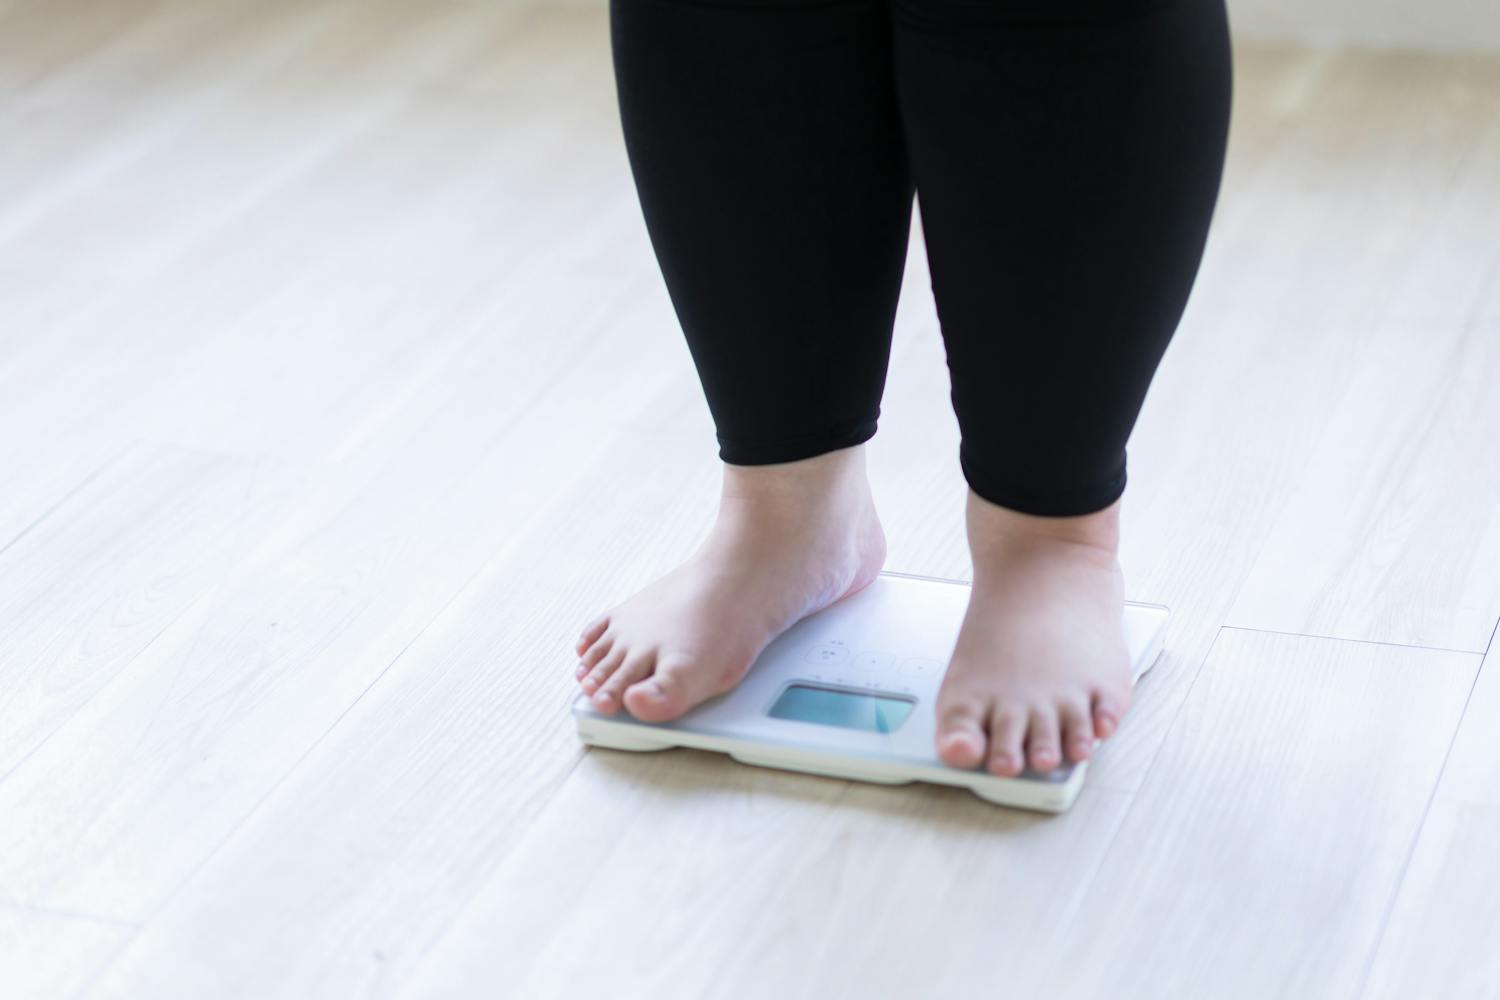 Analyse de 32 ans révèle tendances alarmantes sur l'obésité